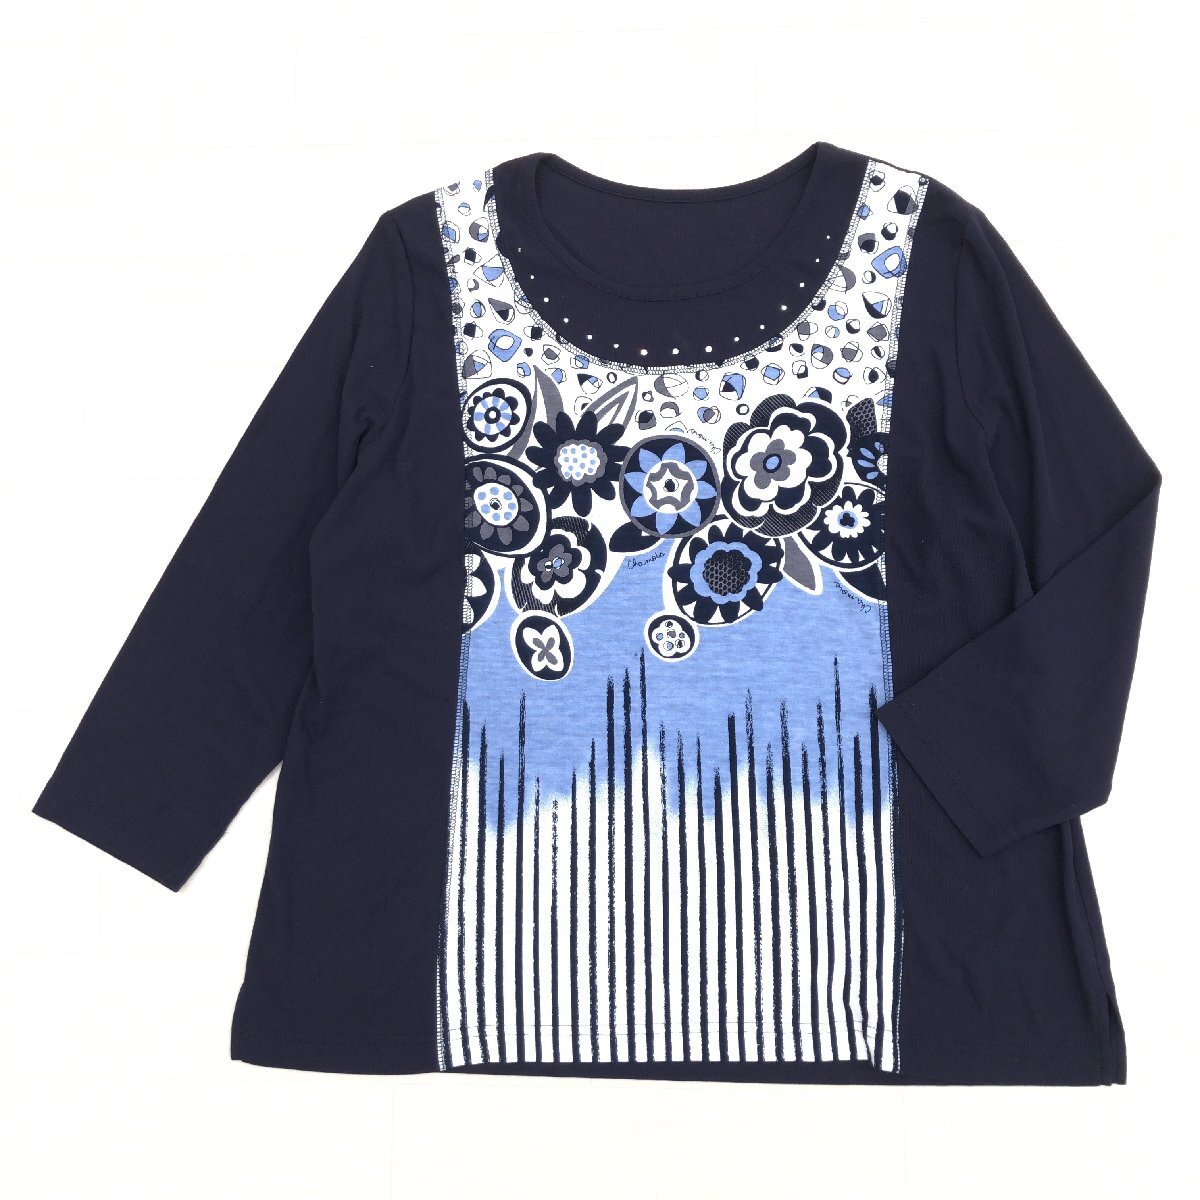 美品 Chamois シャミー コットン100% ビジュー装飾 カットソー 44(2XL) ネイビー系 日本製 ロンT Tシャツ 3L ゆったり 大きい ジオン商事_画像1